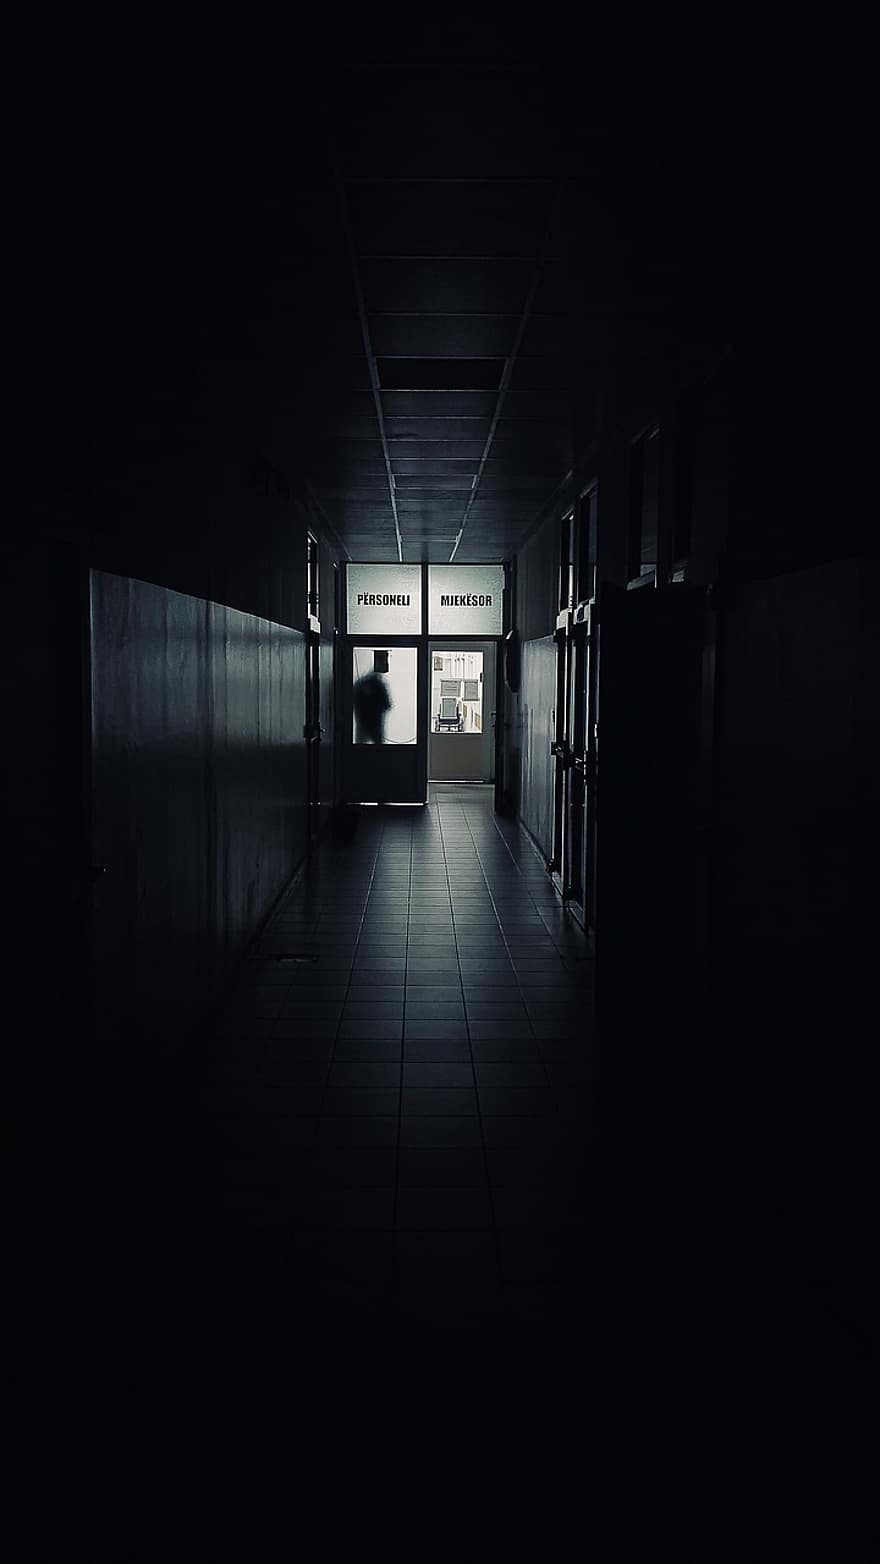 Krankenhaus, Flur, Passage, Dunkelheit, unheimlich